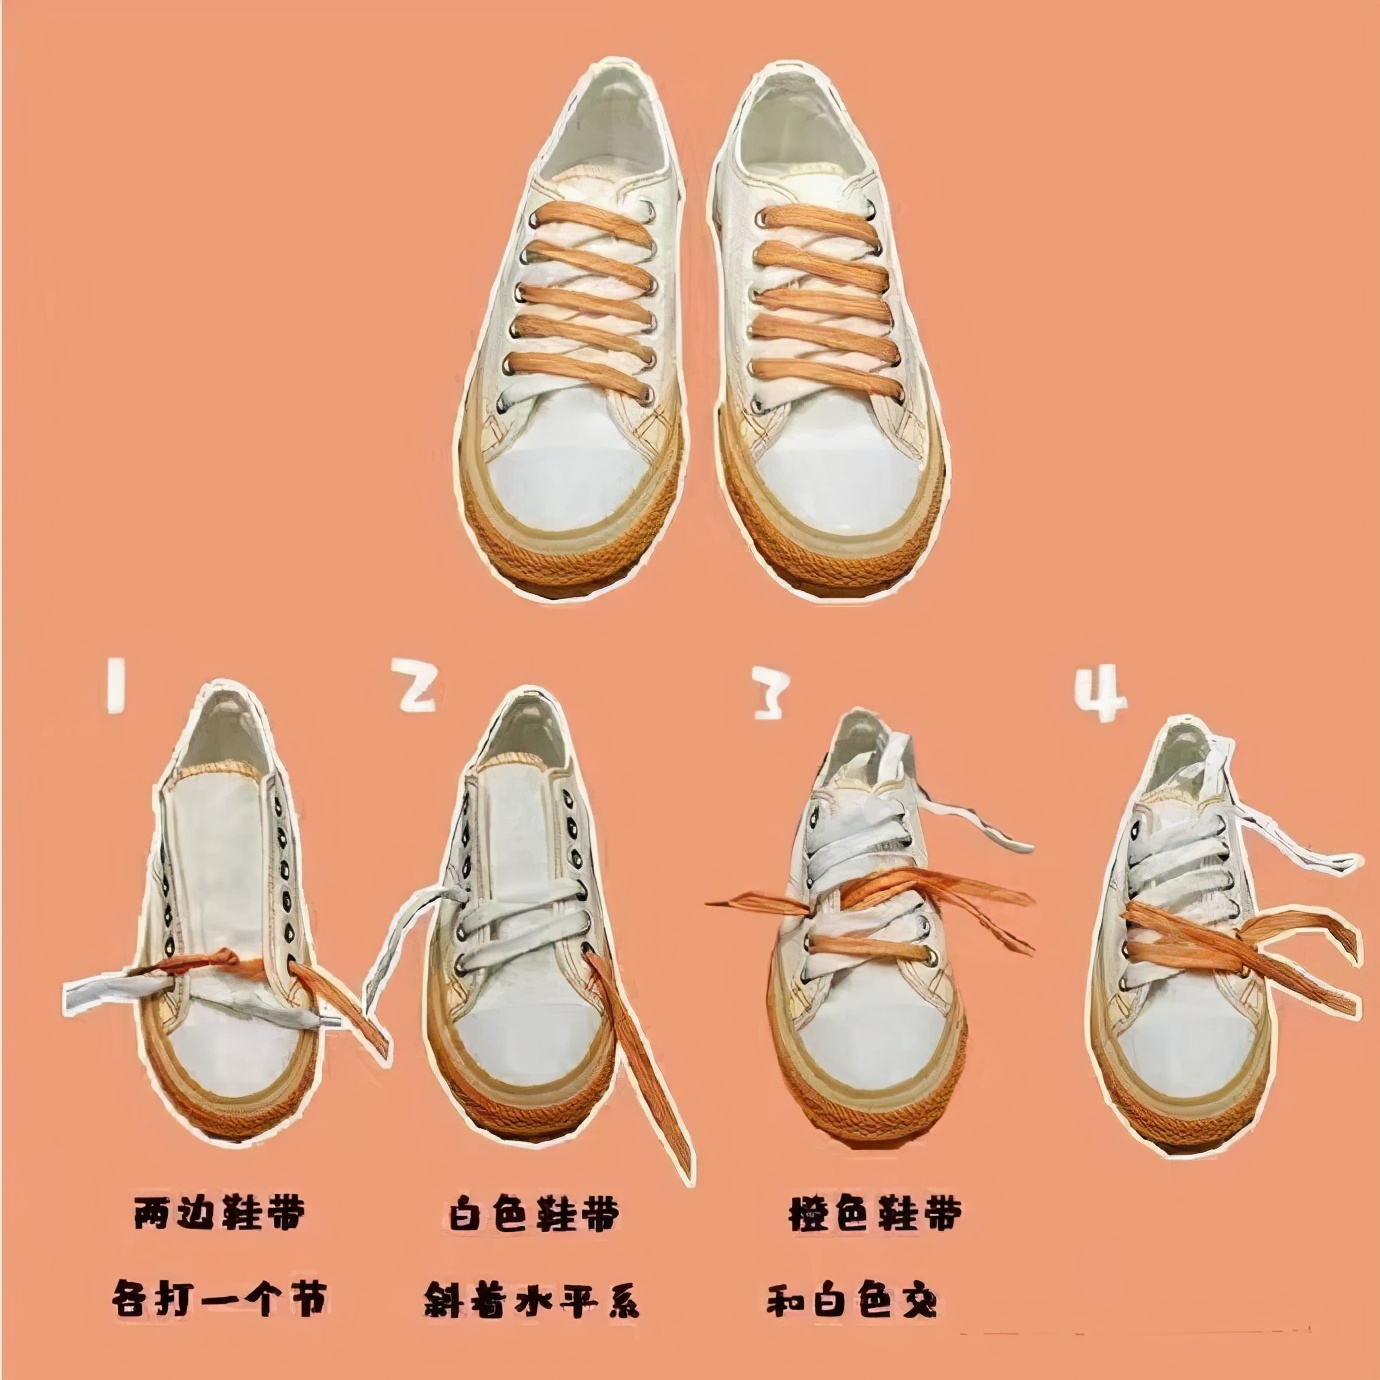 鞋带的24种系法帆布鞋帆布鞋鞋带系法